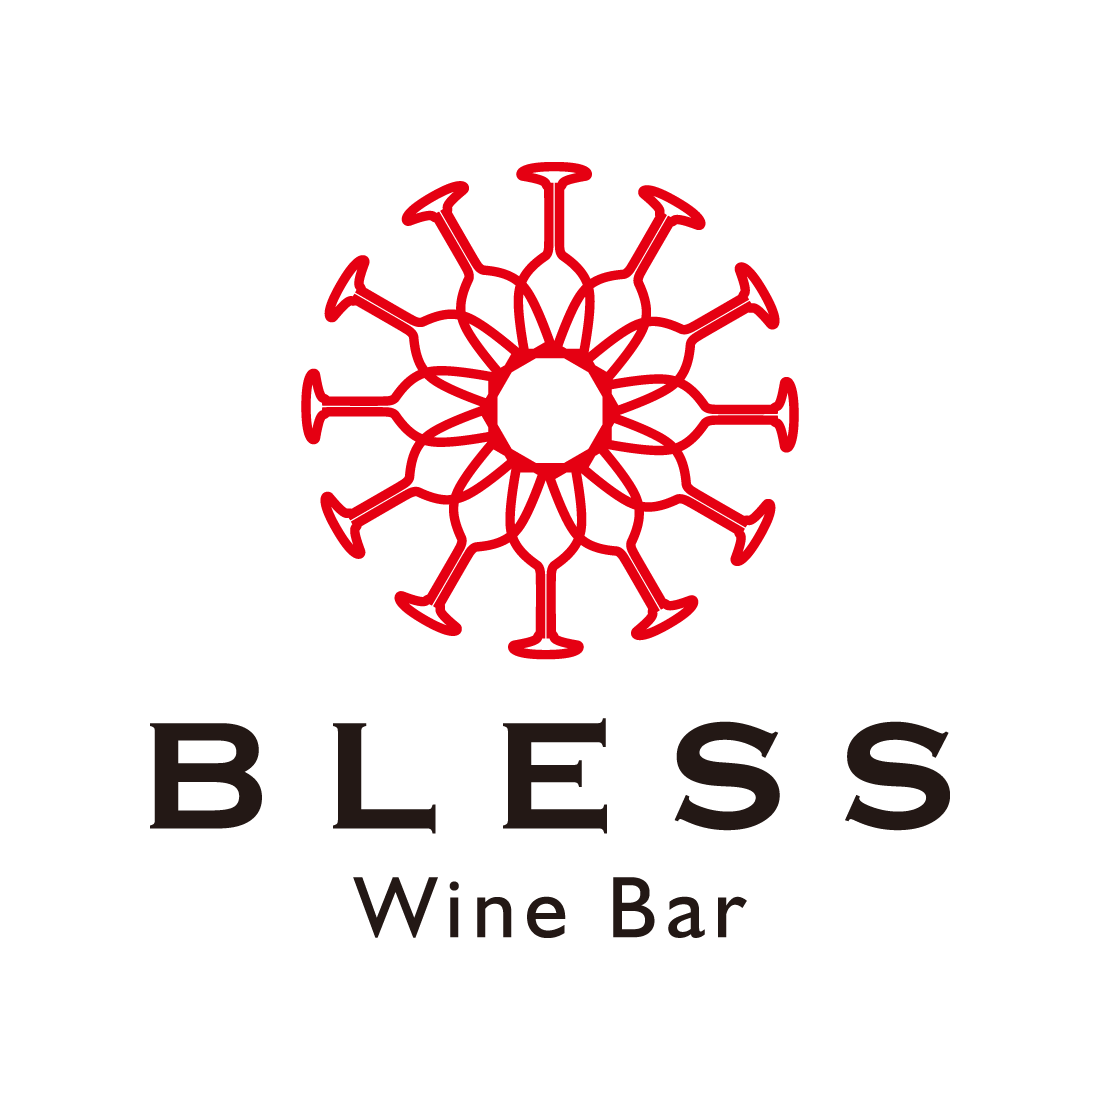 Wine Bar BLESSのロゴマーク